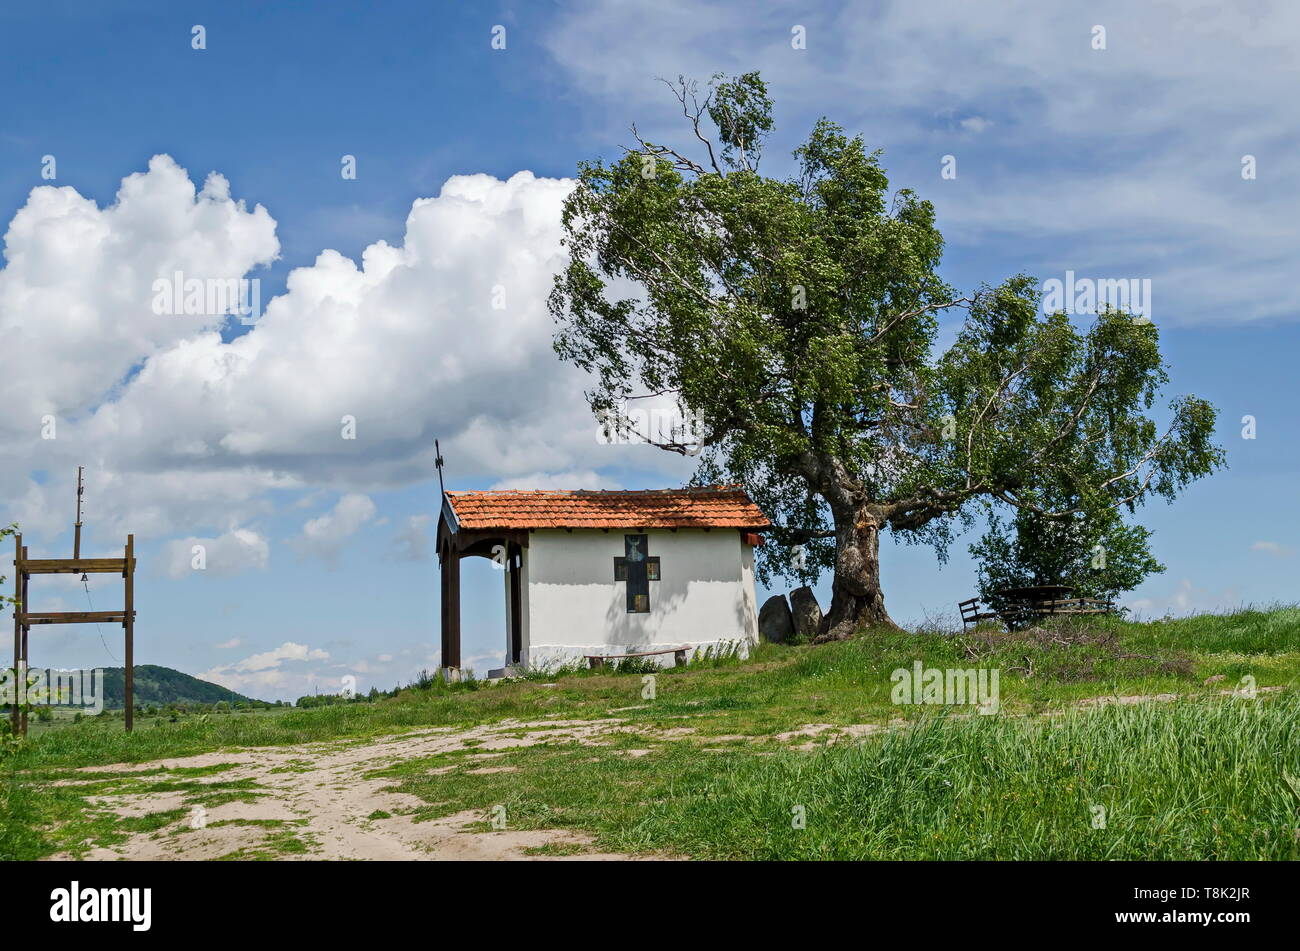 Bellissimo paesaggio con la primavera venerato betulla e vecchia cappella, situato nella montagna plana, Bulgaria Foto Stock